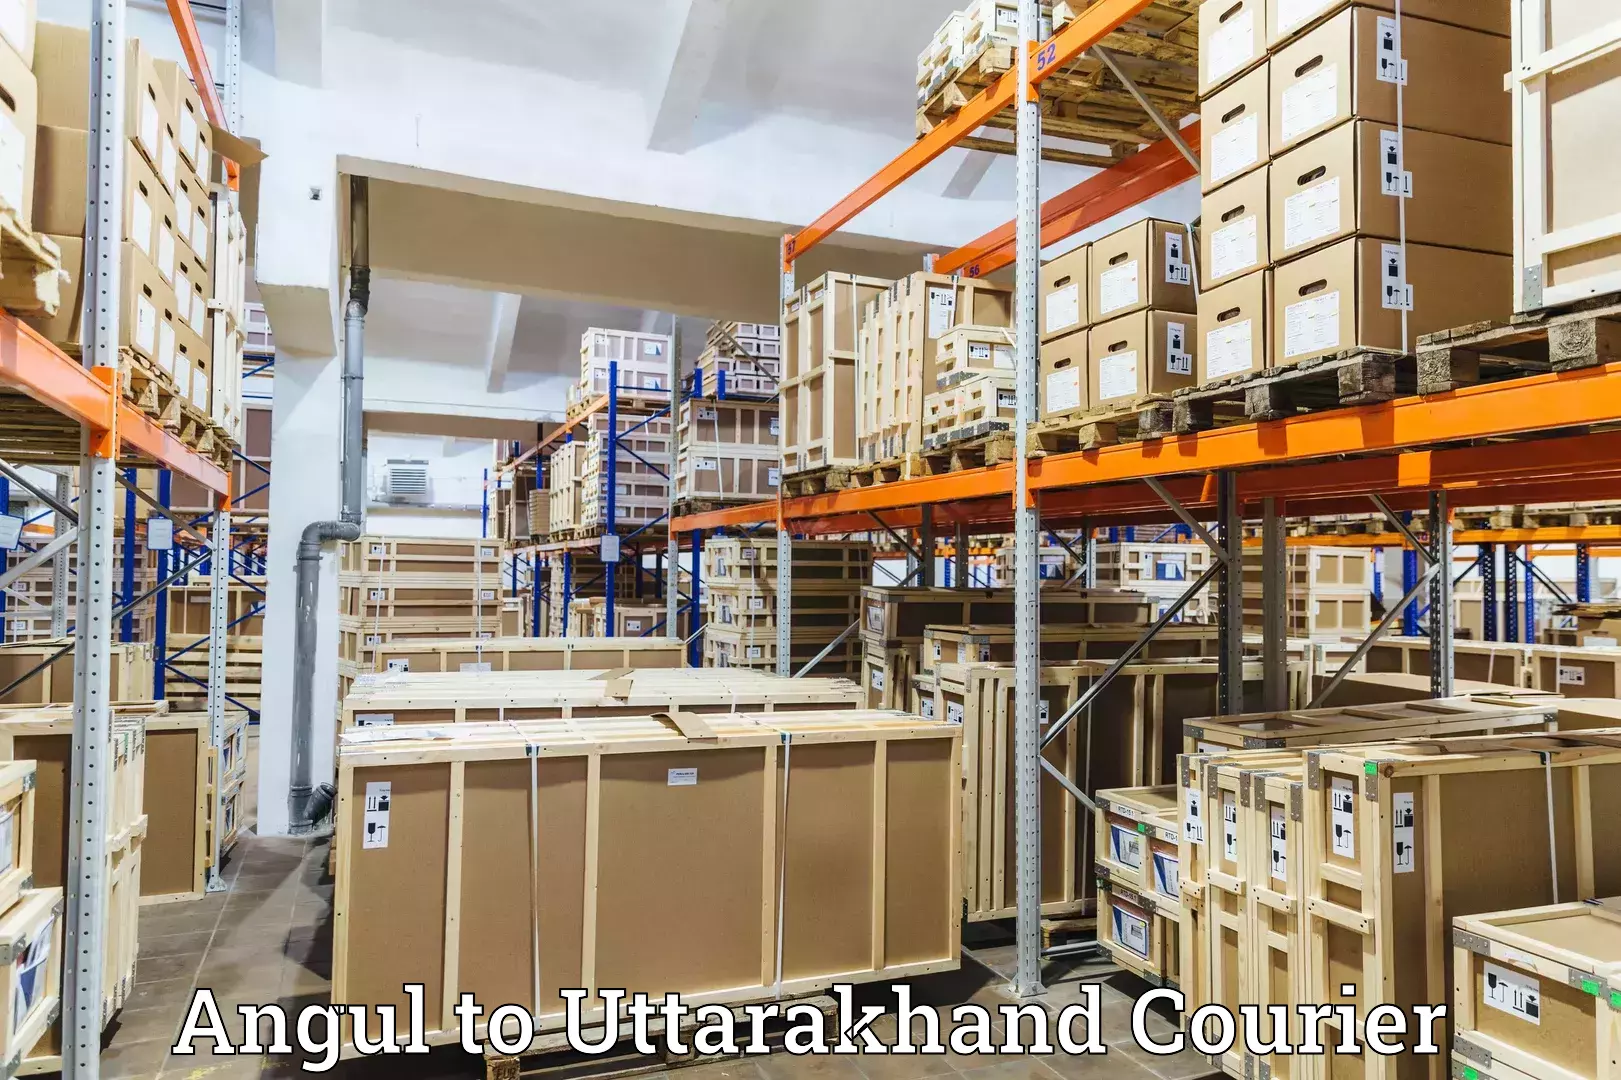 Courier tracking online Angul to Karnaprayag